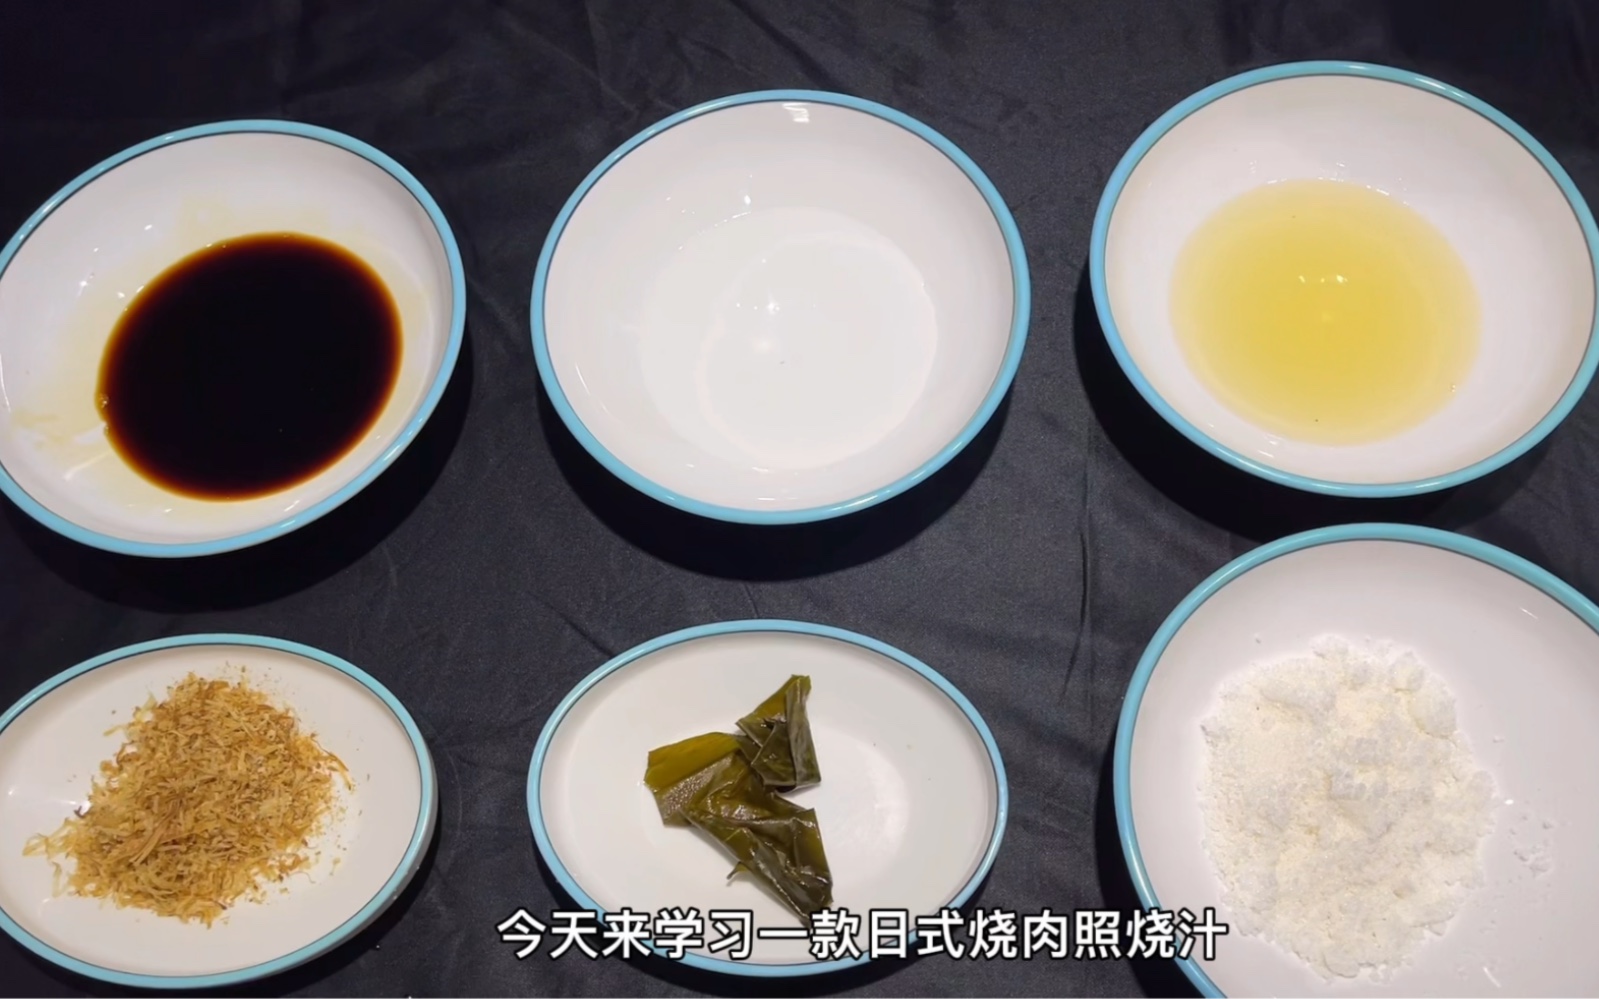 日式照烧汁配方教程分享